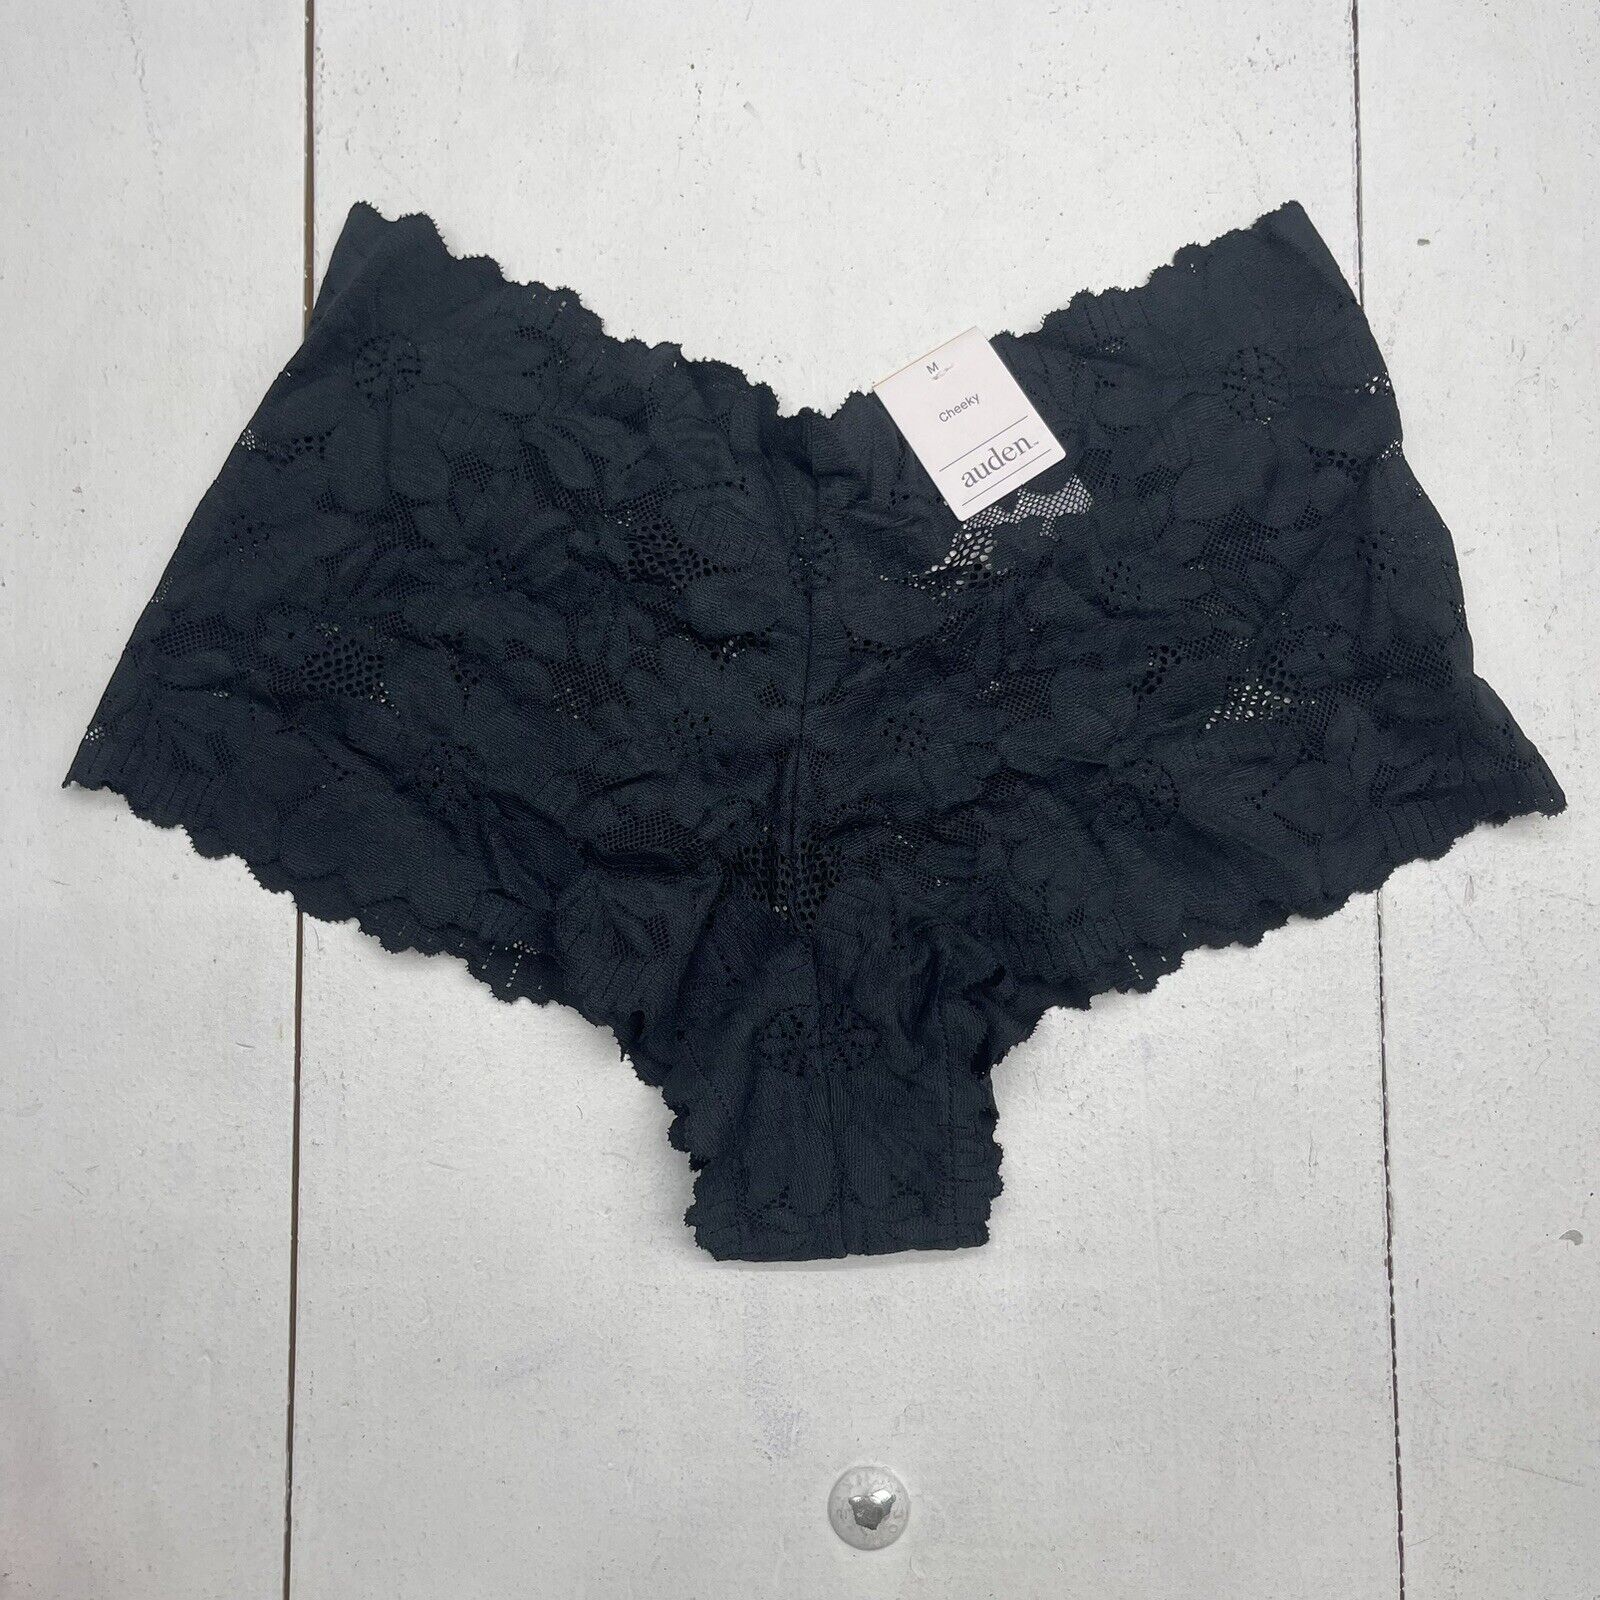 Auden Black Lace Cheeky Underwear Women's Size Medium New - beyond exchange